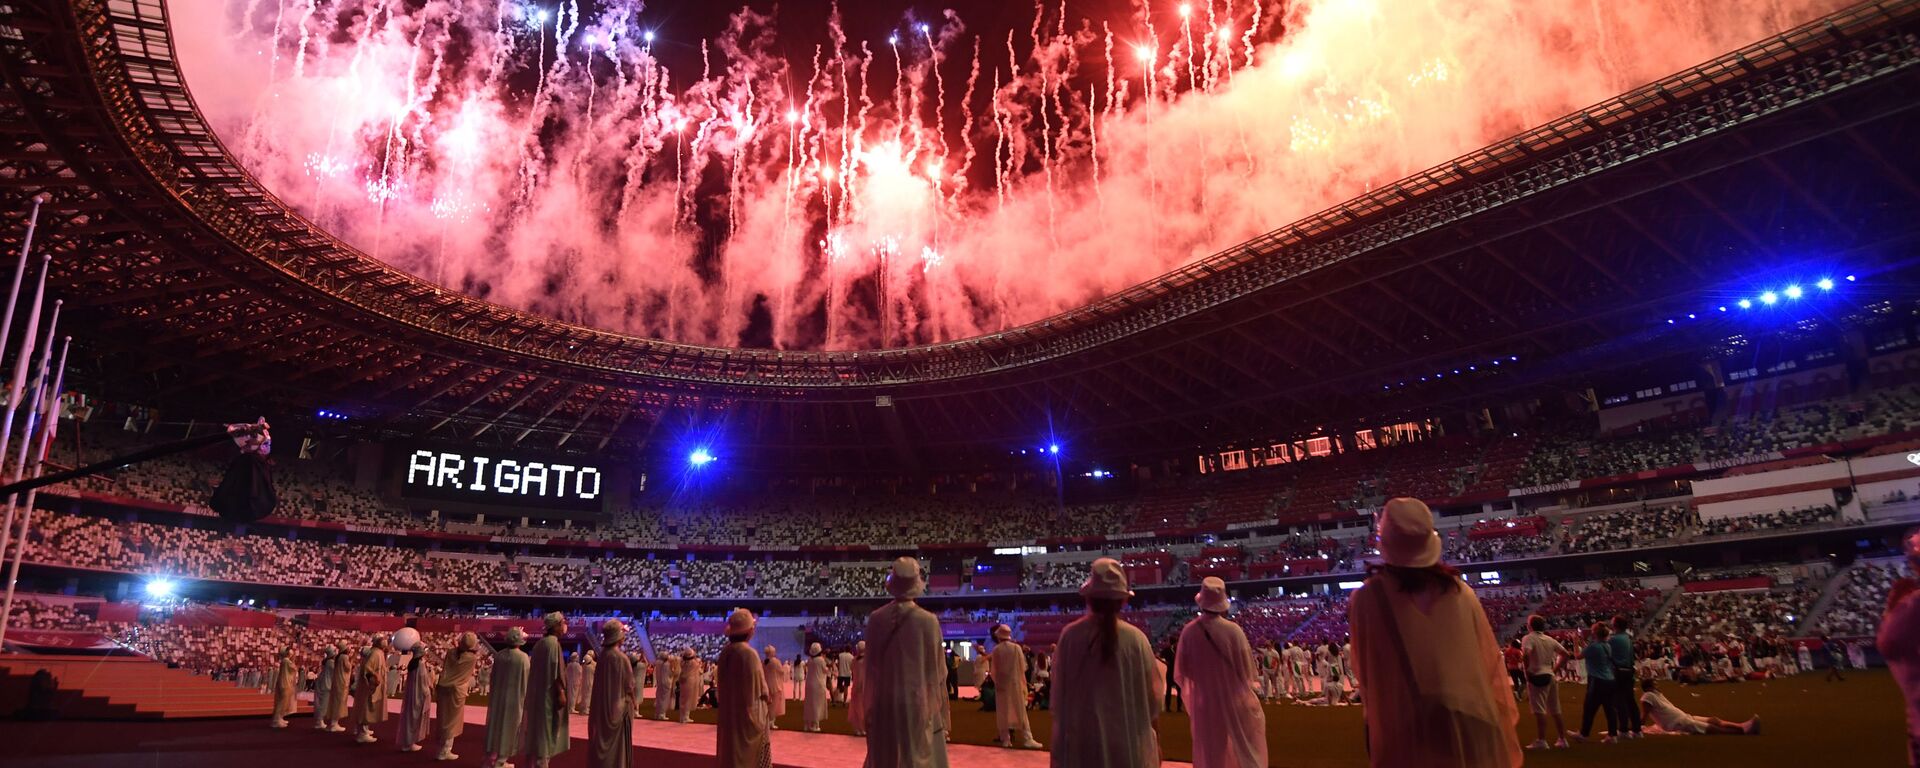 Салют на торжественной церемонии закрытия XXXII летних Олимпийских игр в Токио на Национальном олимпийском стадионе  - Sputnik Mundo, 1920, 08.08.2021